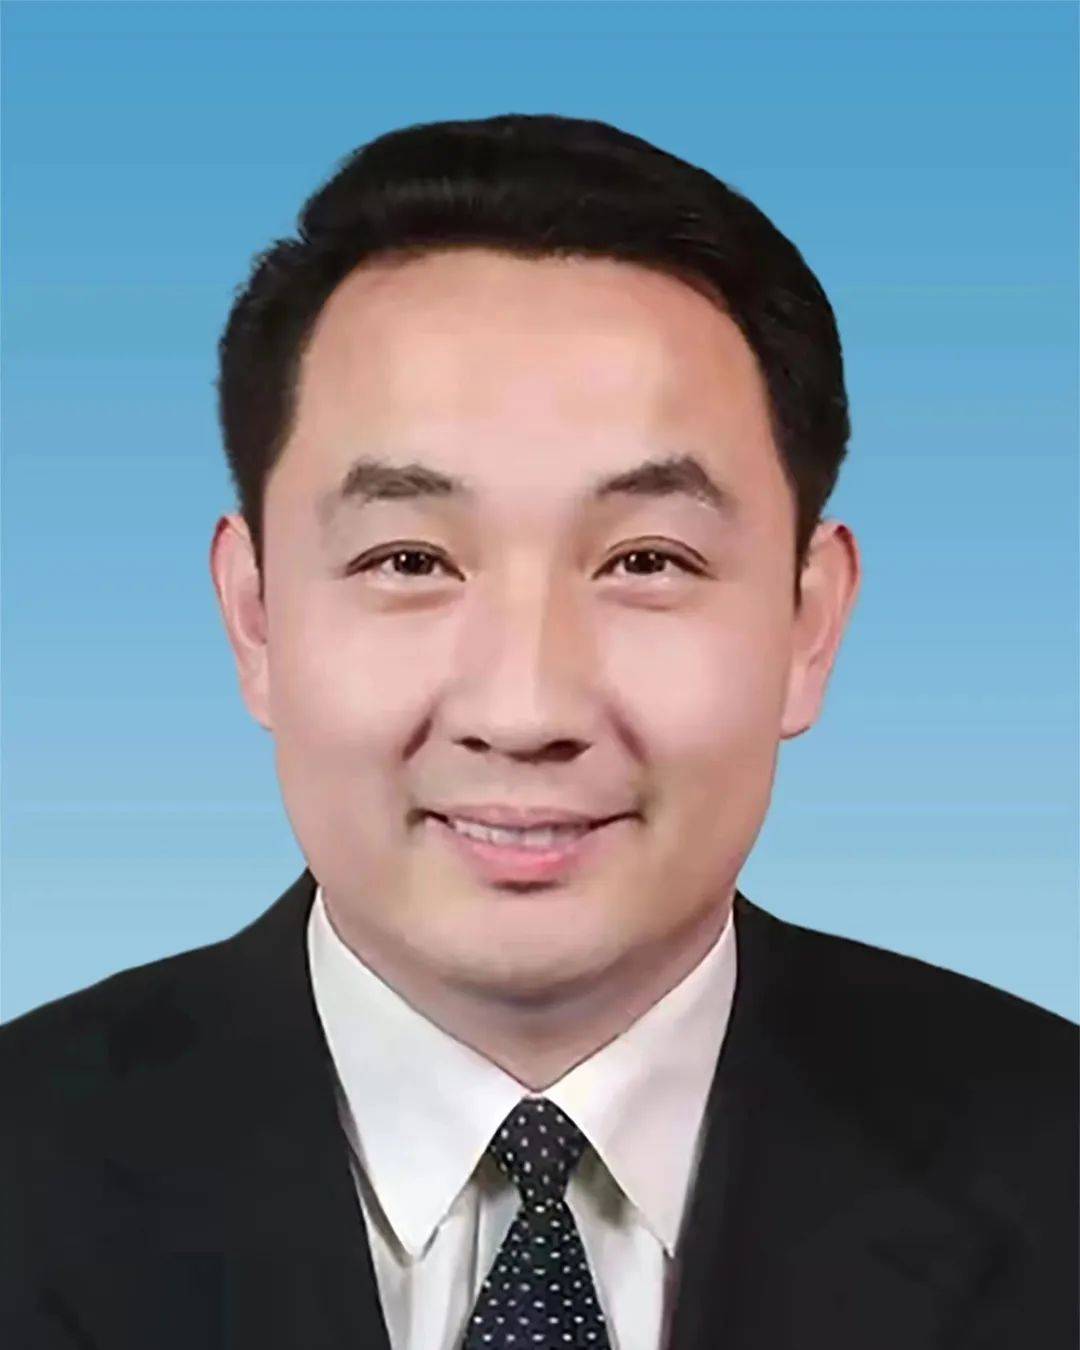 男,汉族,1972年2月生,中央党校大学,中共党员,现任济南市副市长,市